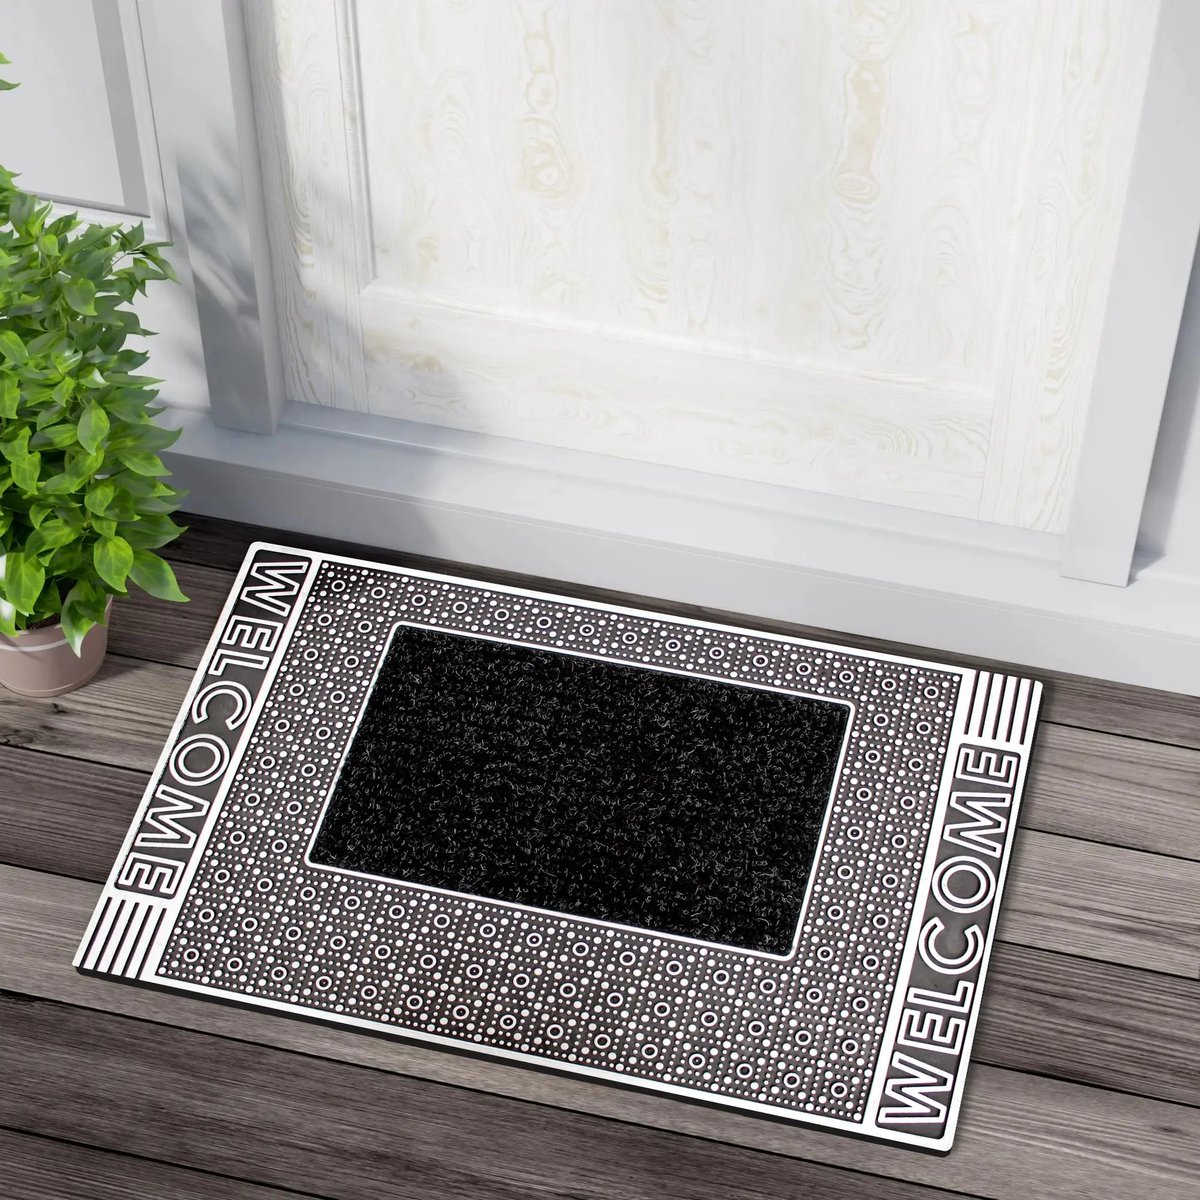 G.M. Floors Welcoming Comfort: De Beste In & Outdoor Deurmat droogloopmat / deurmat voor buiten / deurmat binnen / Linea-Serie Silver